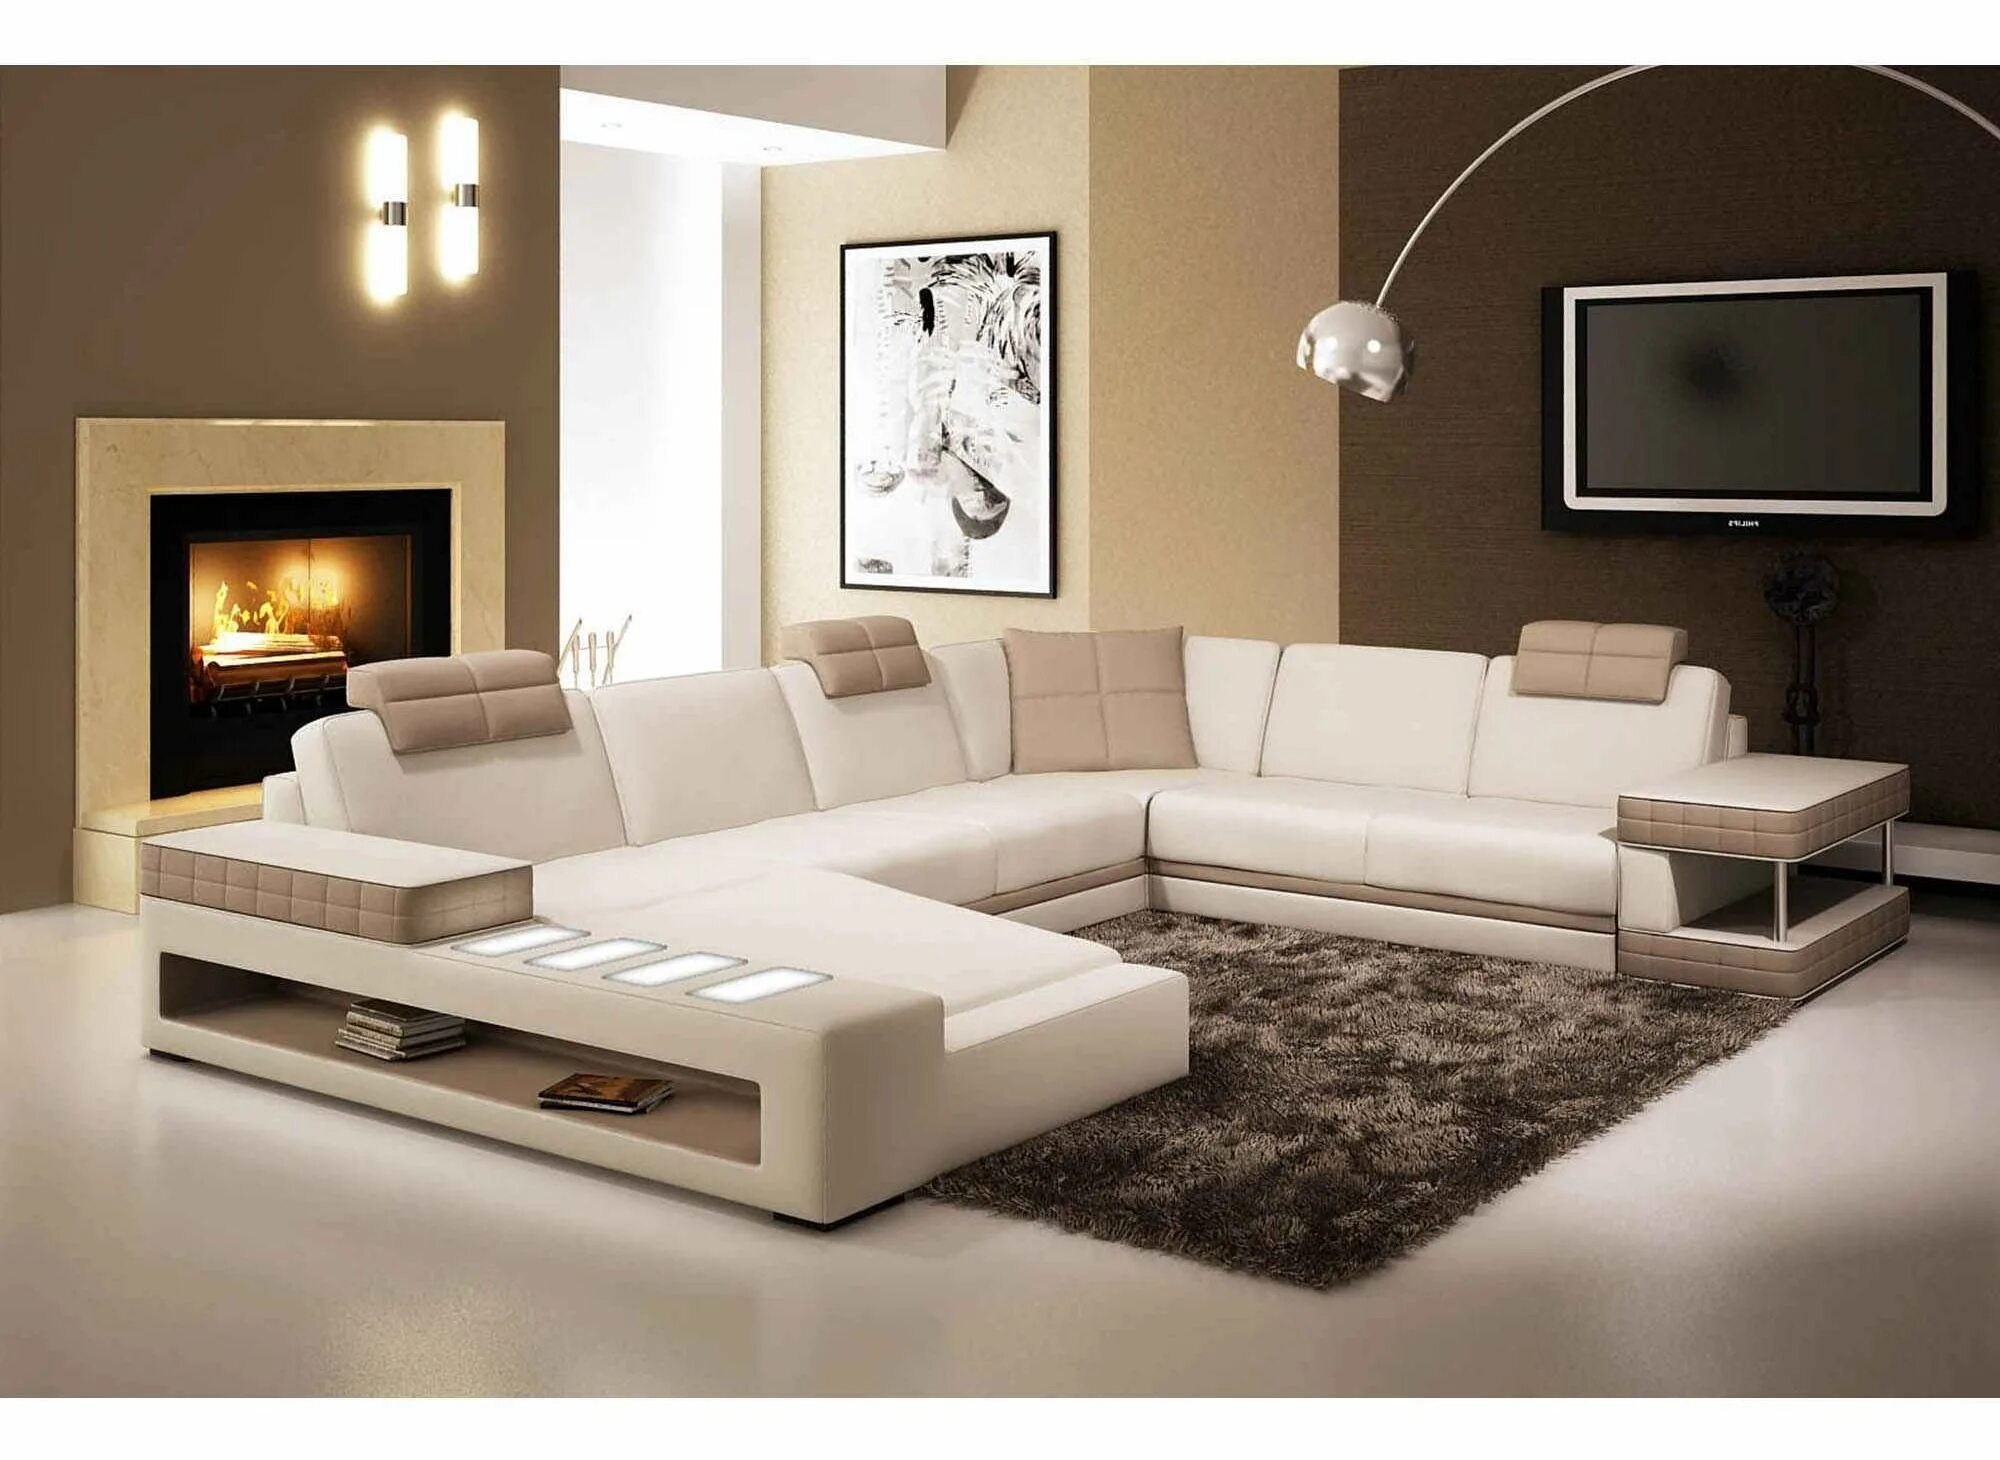 Современные диваны в зал. Красивые диваны для гостиной. Современные диваны для гостиной. Угловой диван в интерьере гостиной. Современная мягкая мебель для гостиной.